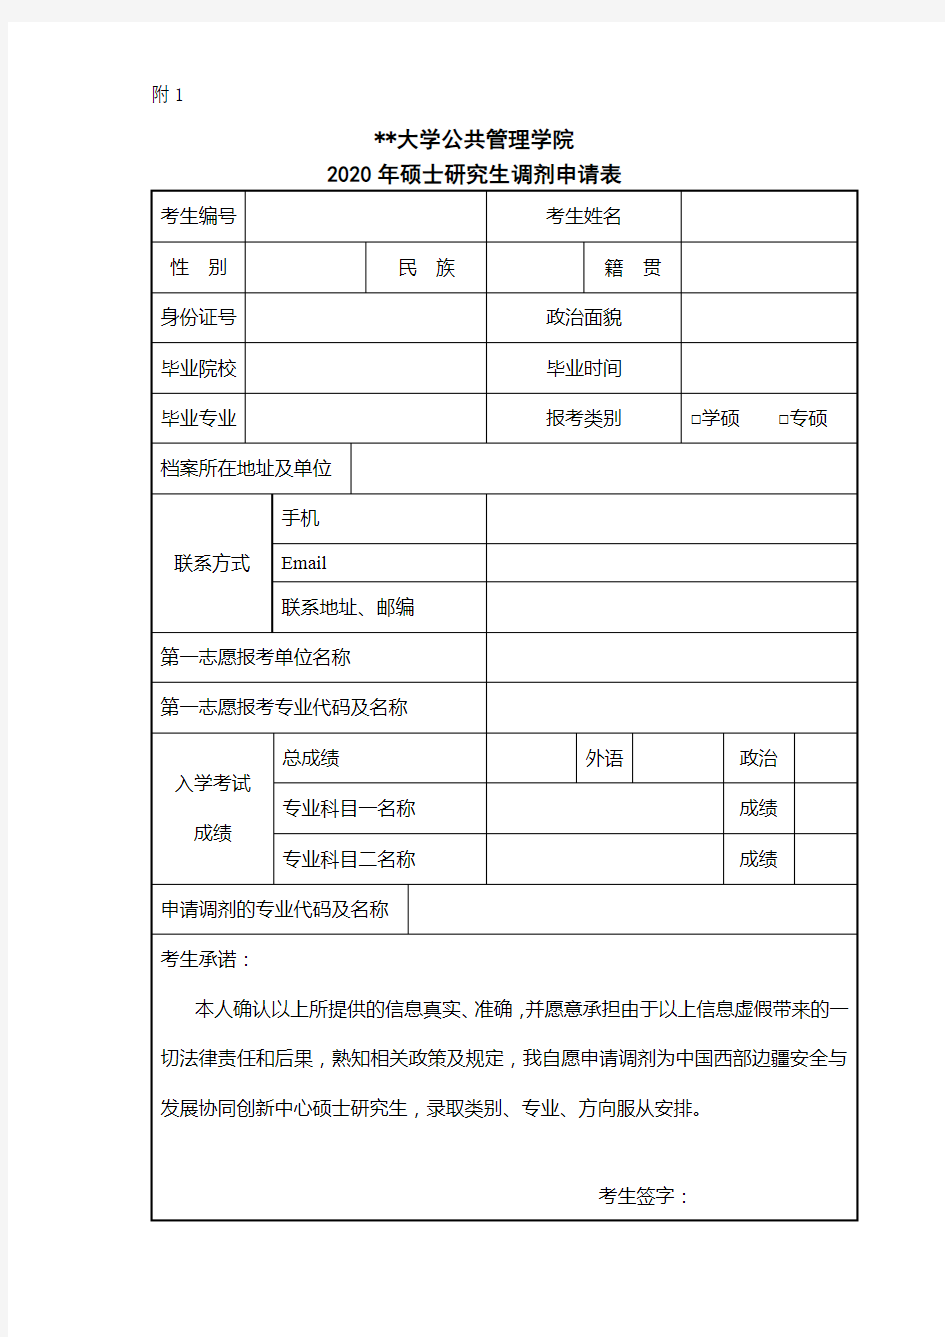 四川大学公共管理学院2020年硕士研究生调剂申请表【模板】